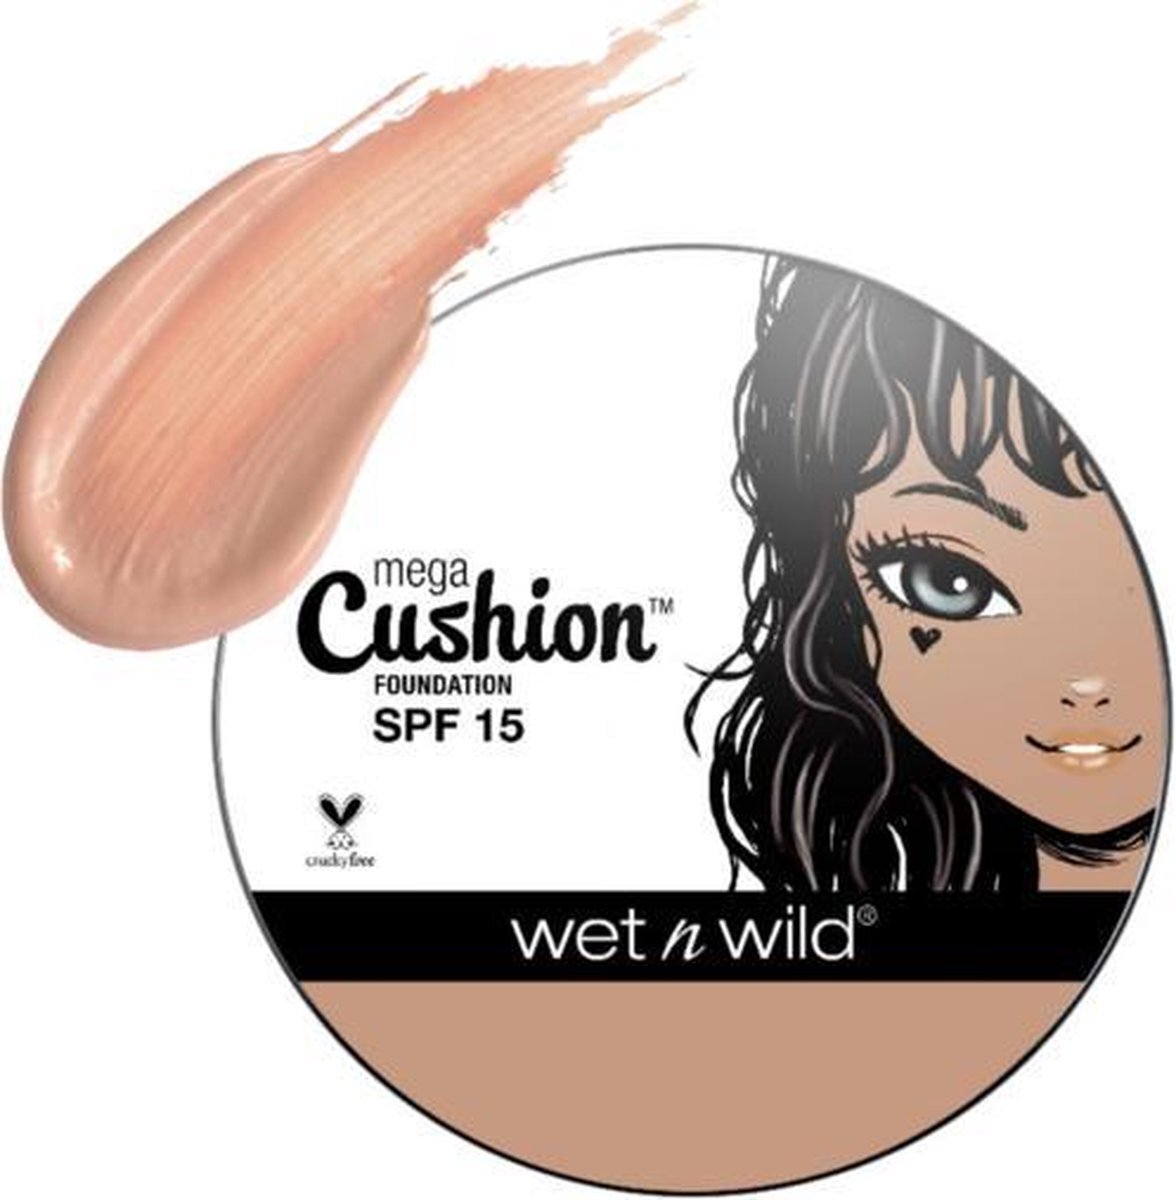 Wet n'Wild Wet 'n Wild MegaCushion Liquid Foundation - 108A Nude Beige - SPF15 - 15 g